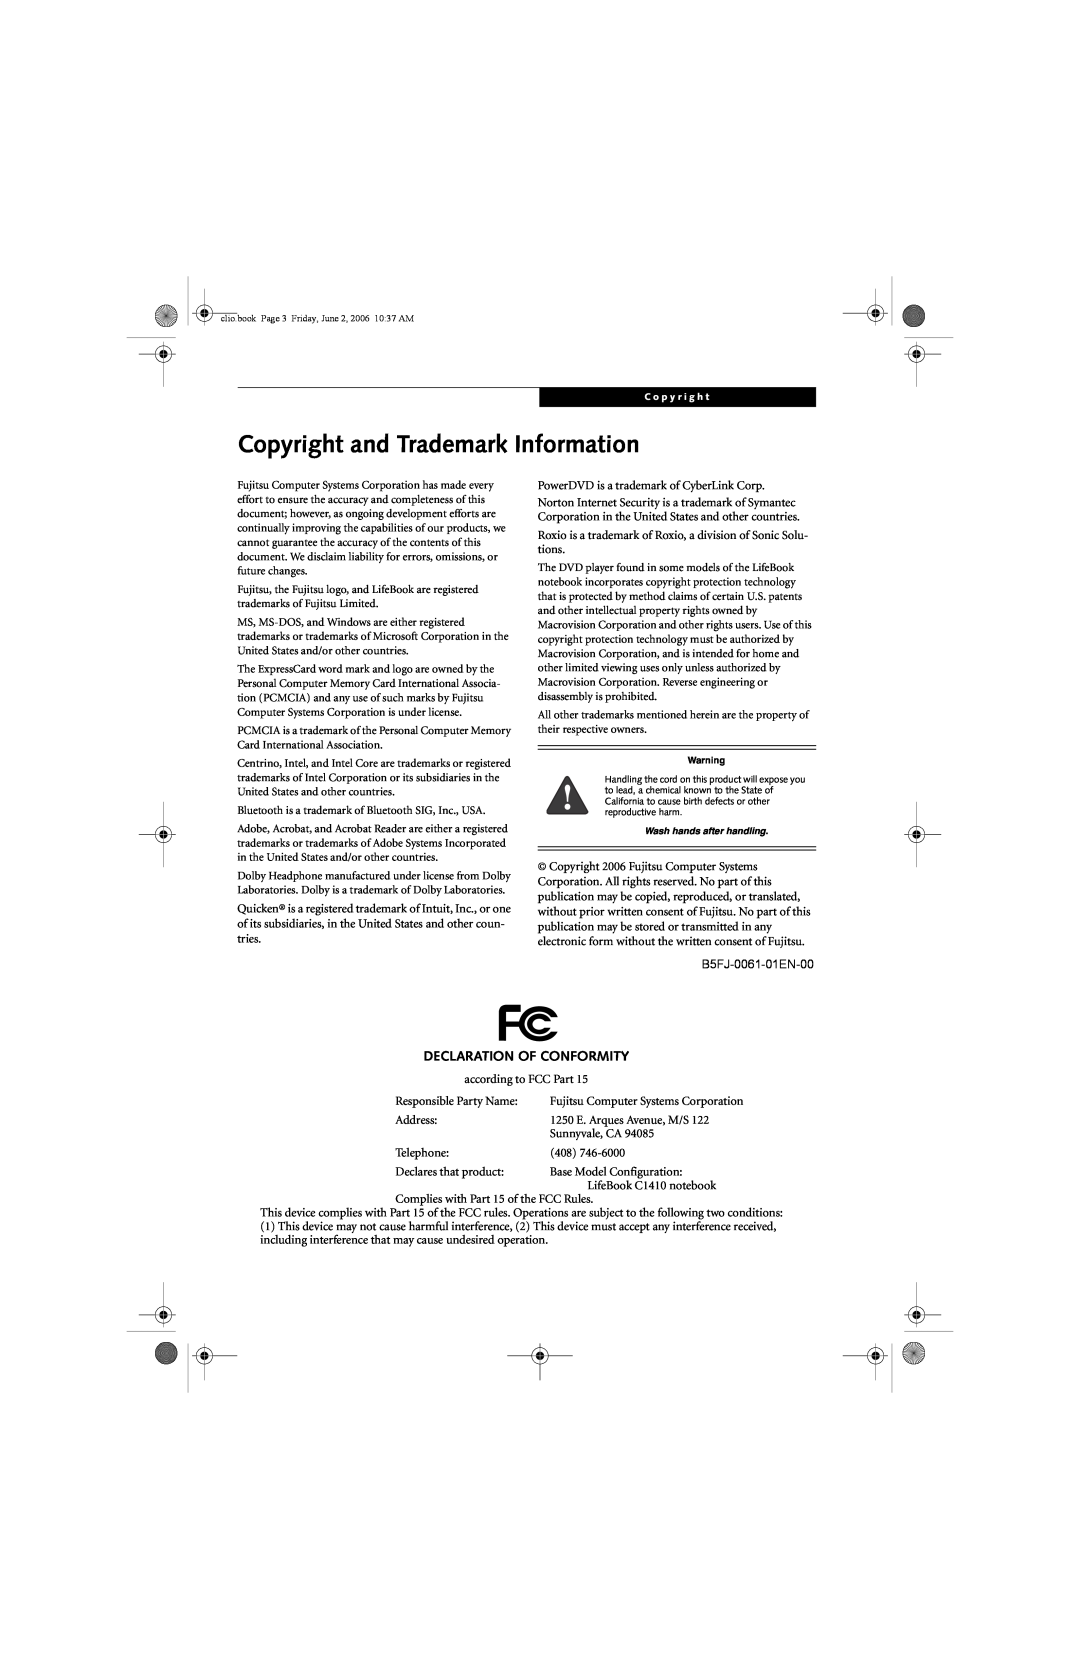 Fujitsu C1410 manual Copyright and Trademark Information, Declaration Of Conformity 